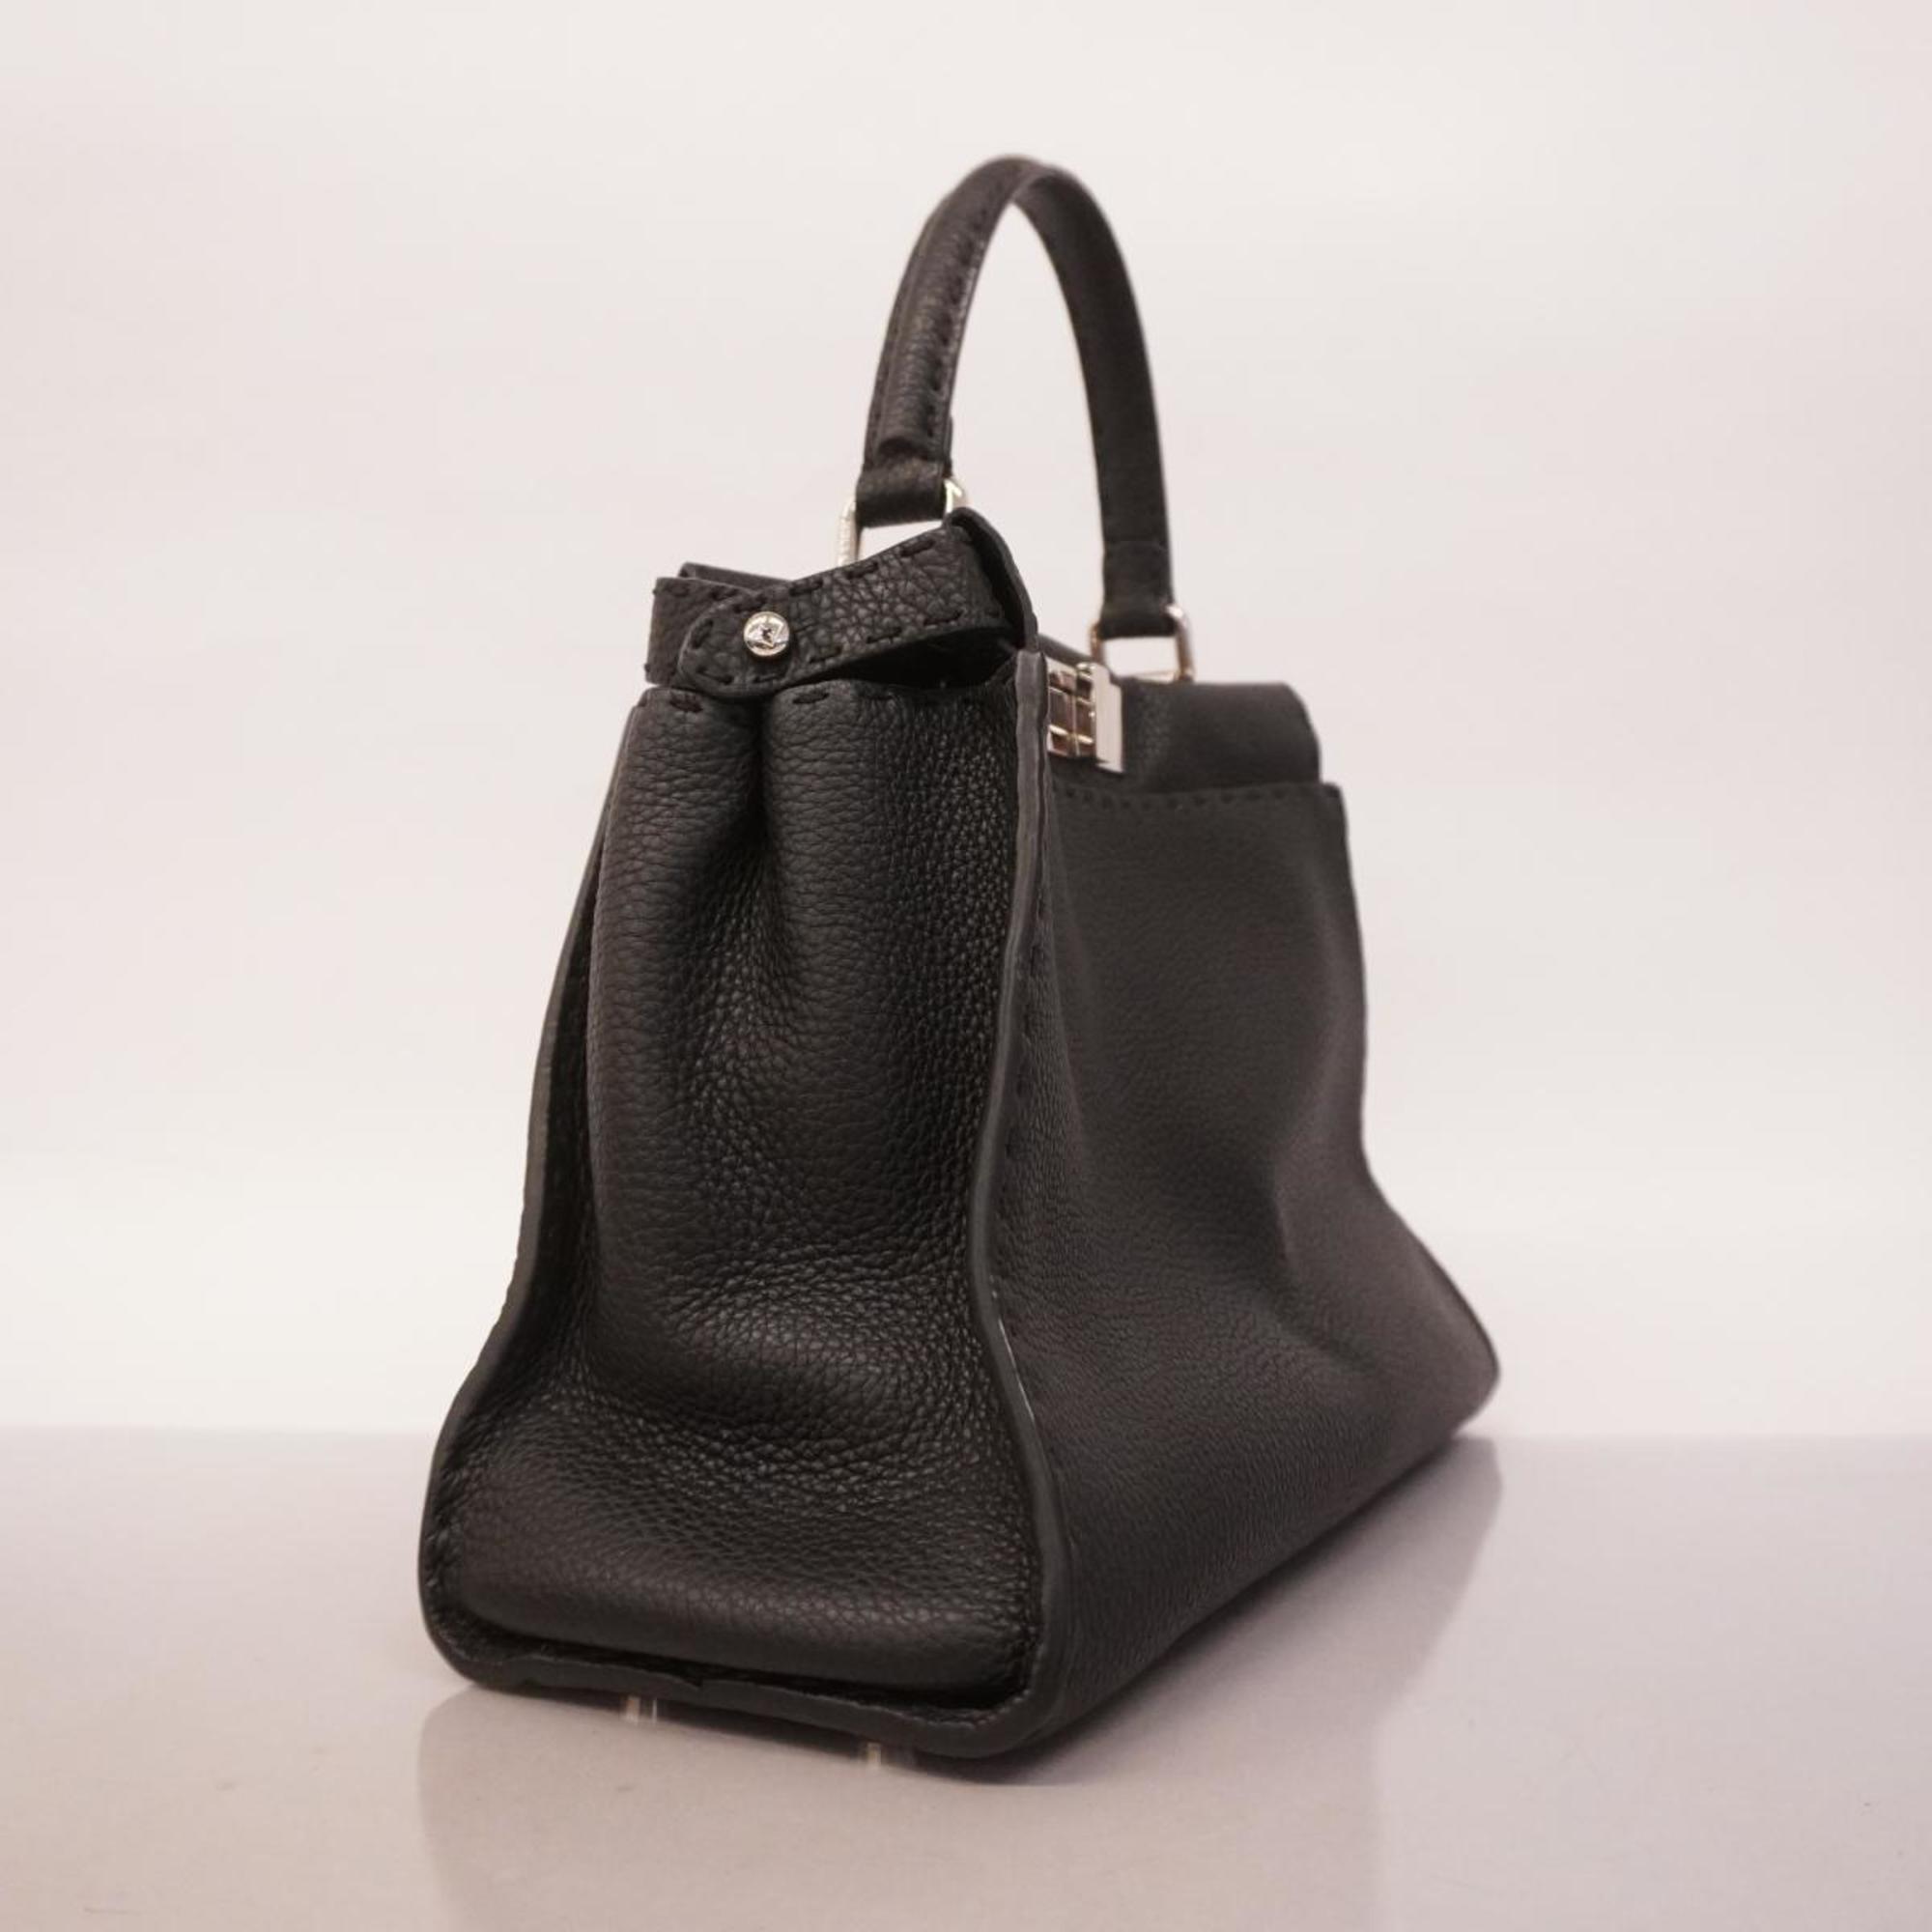 Fendi handbag Selleria Peekaboo leather black ladies